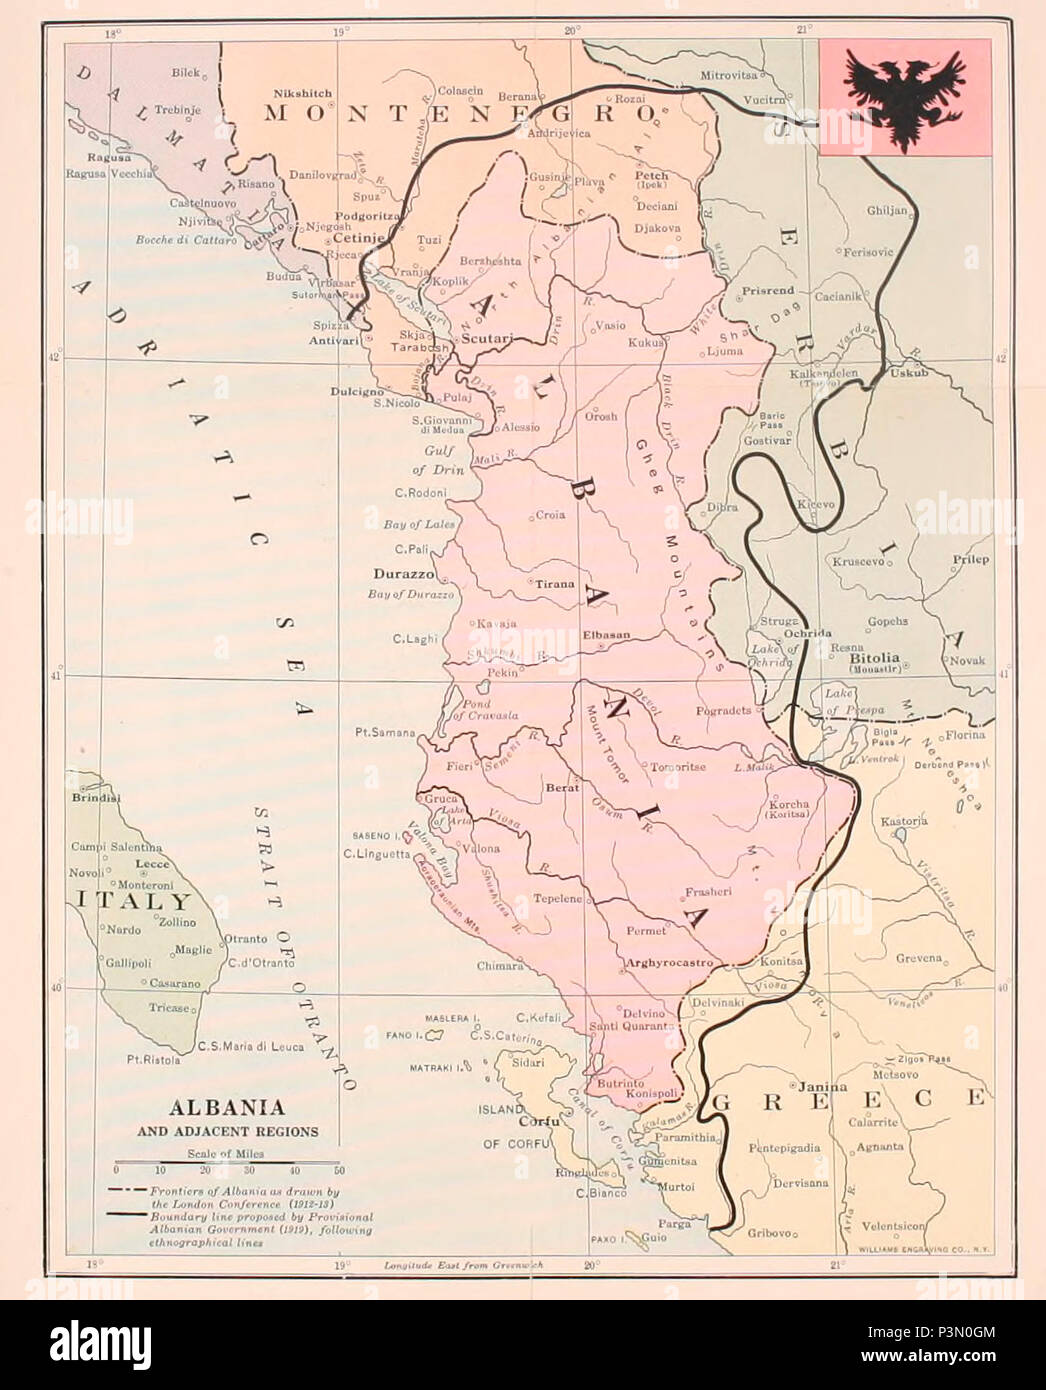 La carte de l'Albanie et les régions adjacentes, vers 1919 Banque D'Images